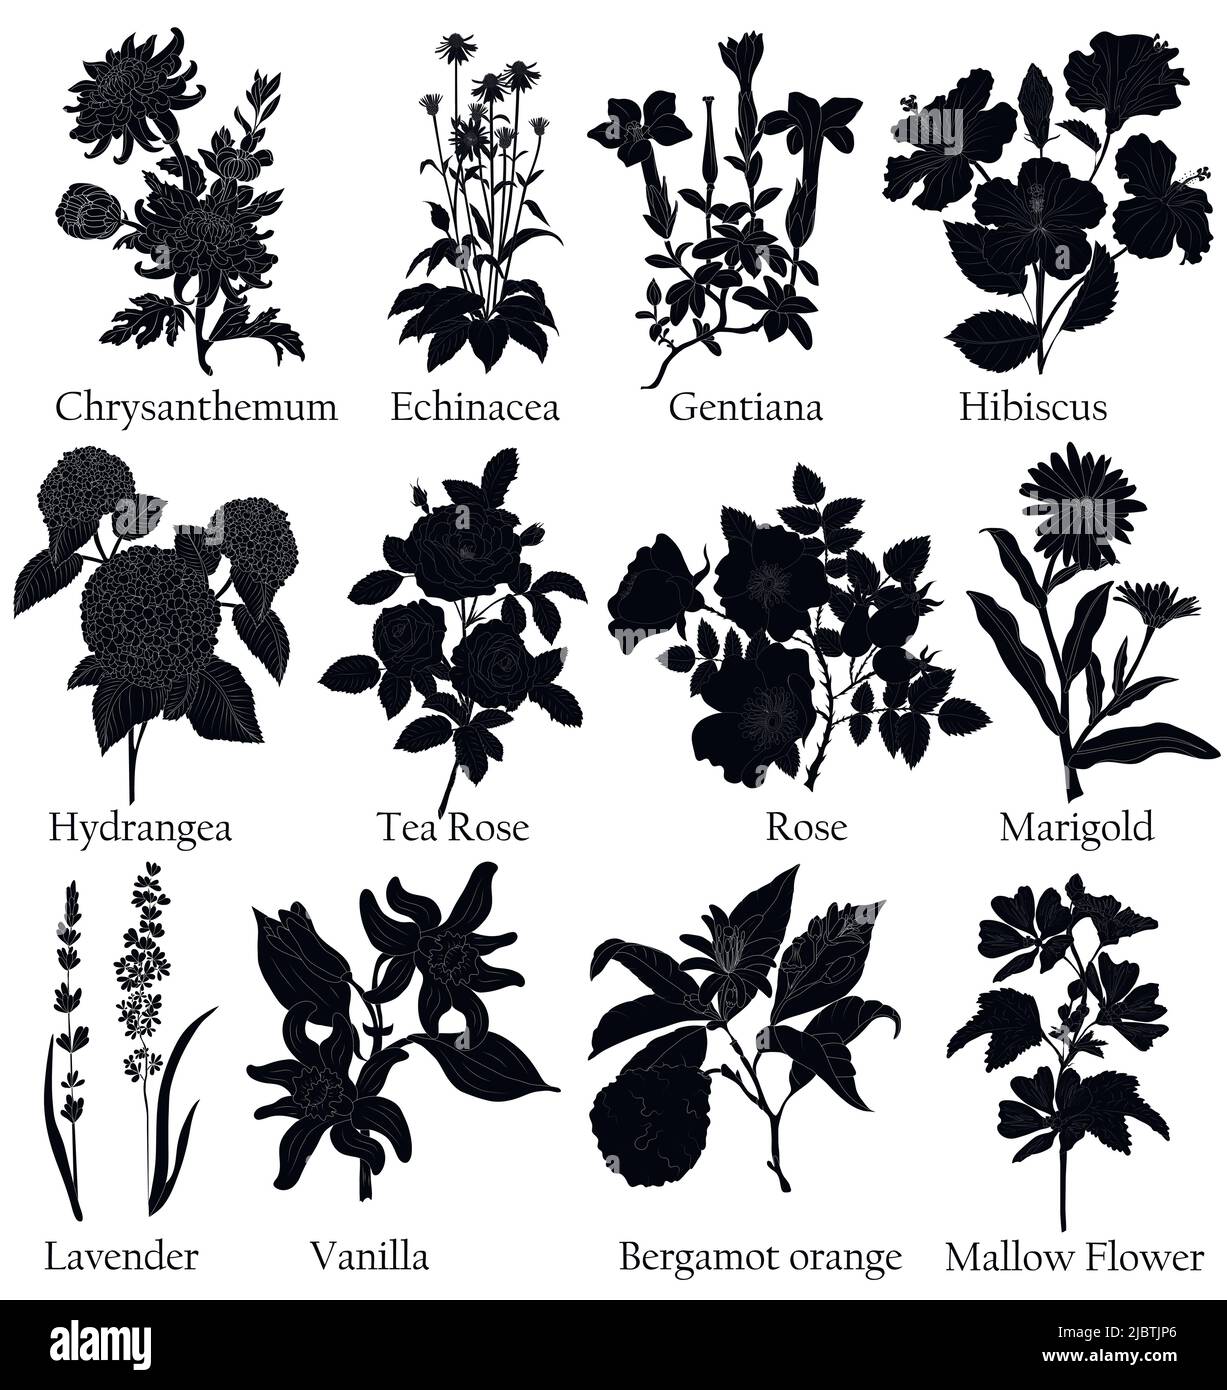 Illustrazione nera a base di erbe di una pianta in un vettore con fiore per l'uso nella decorazione, la creazione di mazzi, la cottura di tisane e medicinali. Illustrazione Vettoriale